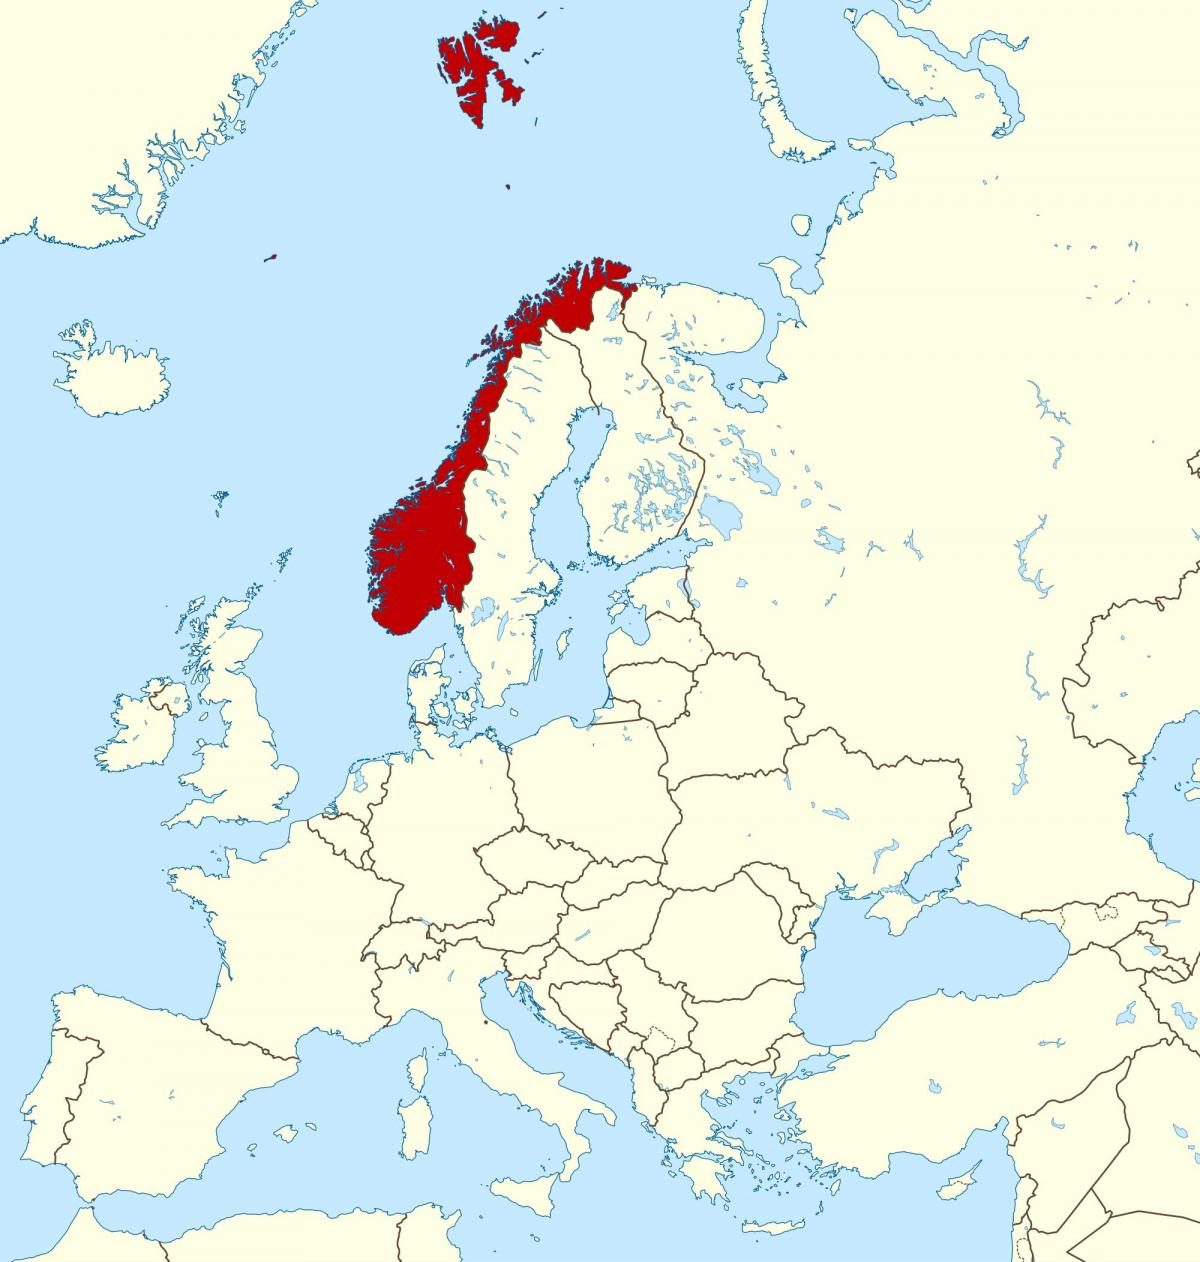 karta Norveške i Europe